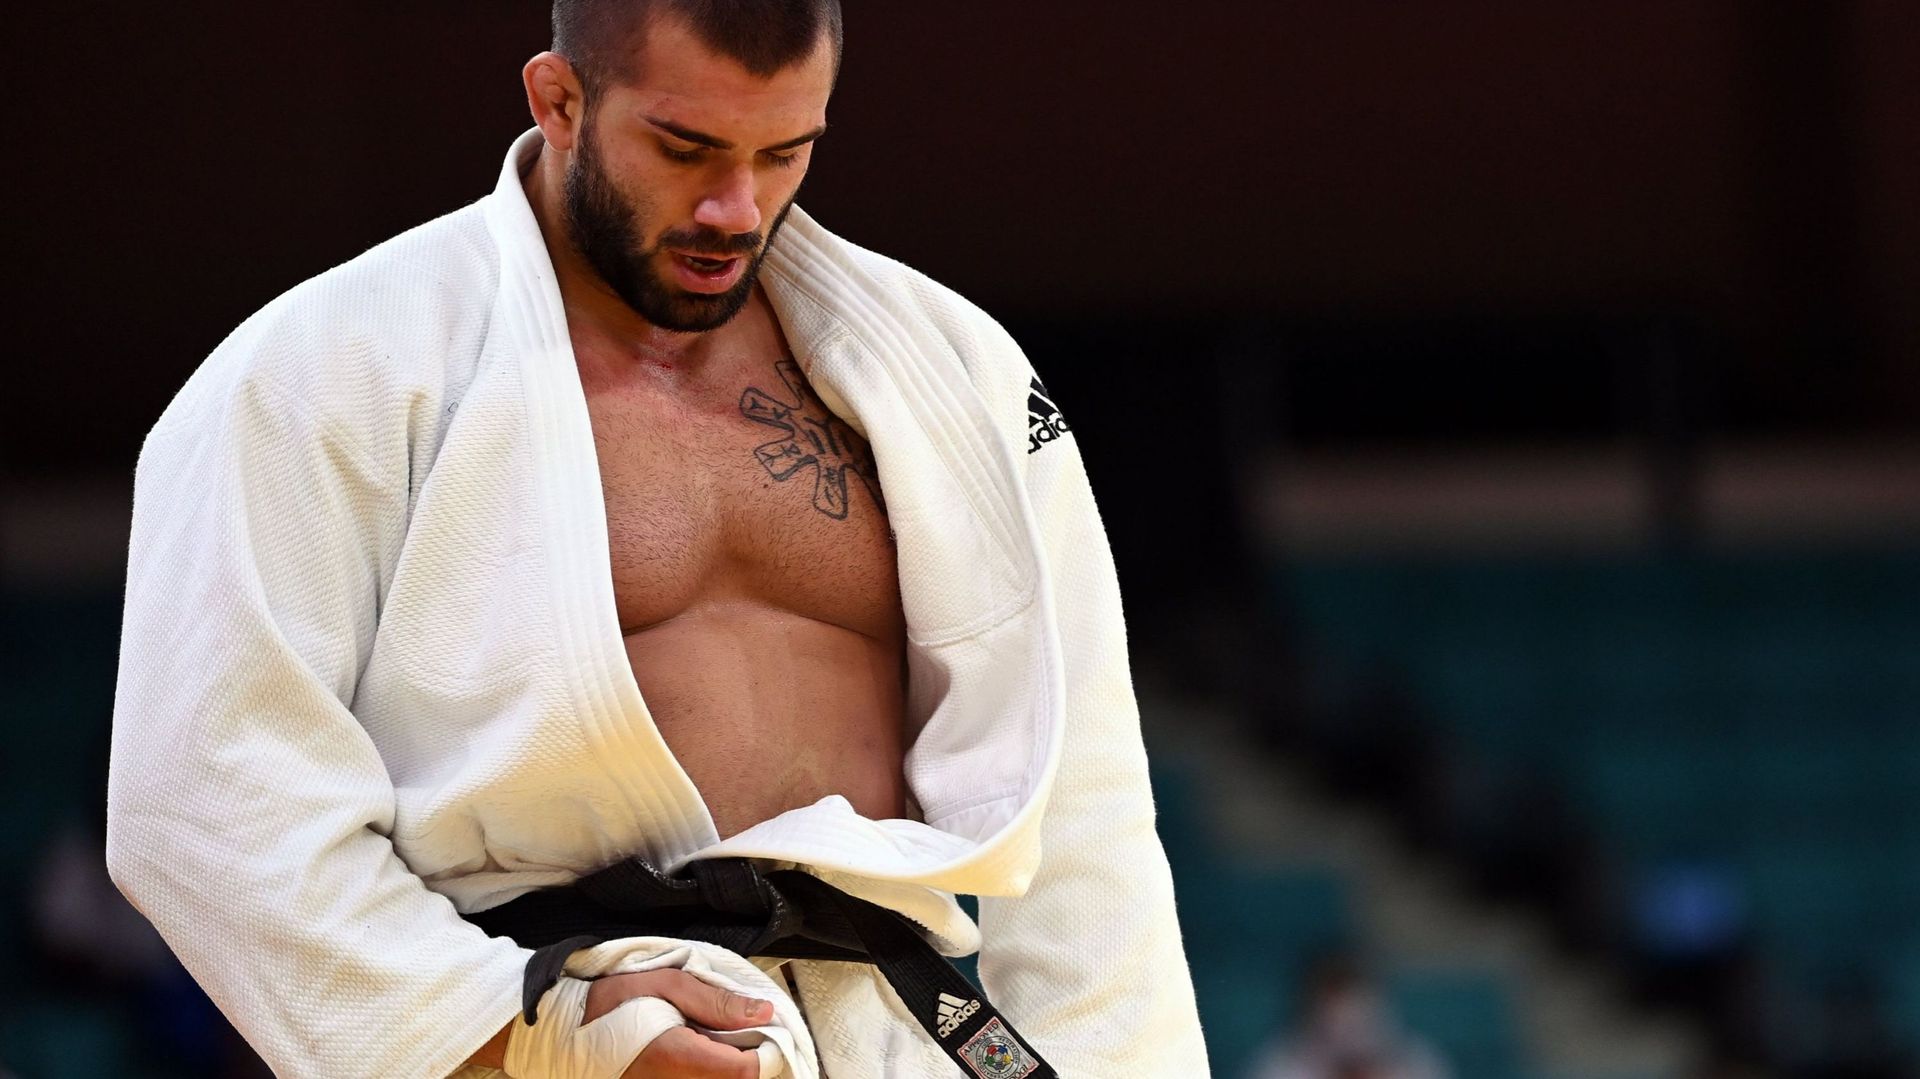 Le Belge, Toma Nikiforov termine à la 5ème place des championnats du monde de judo en -100kg à Tachkent